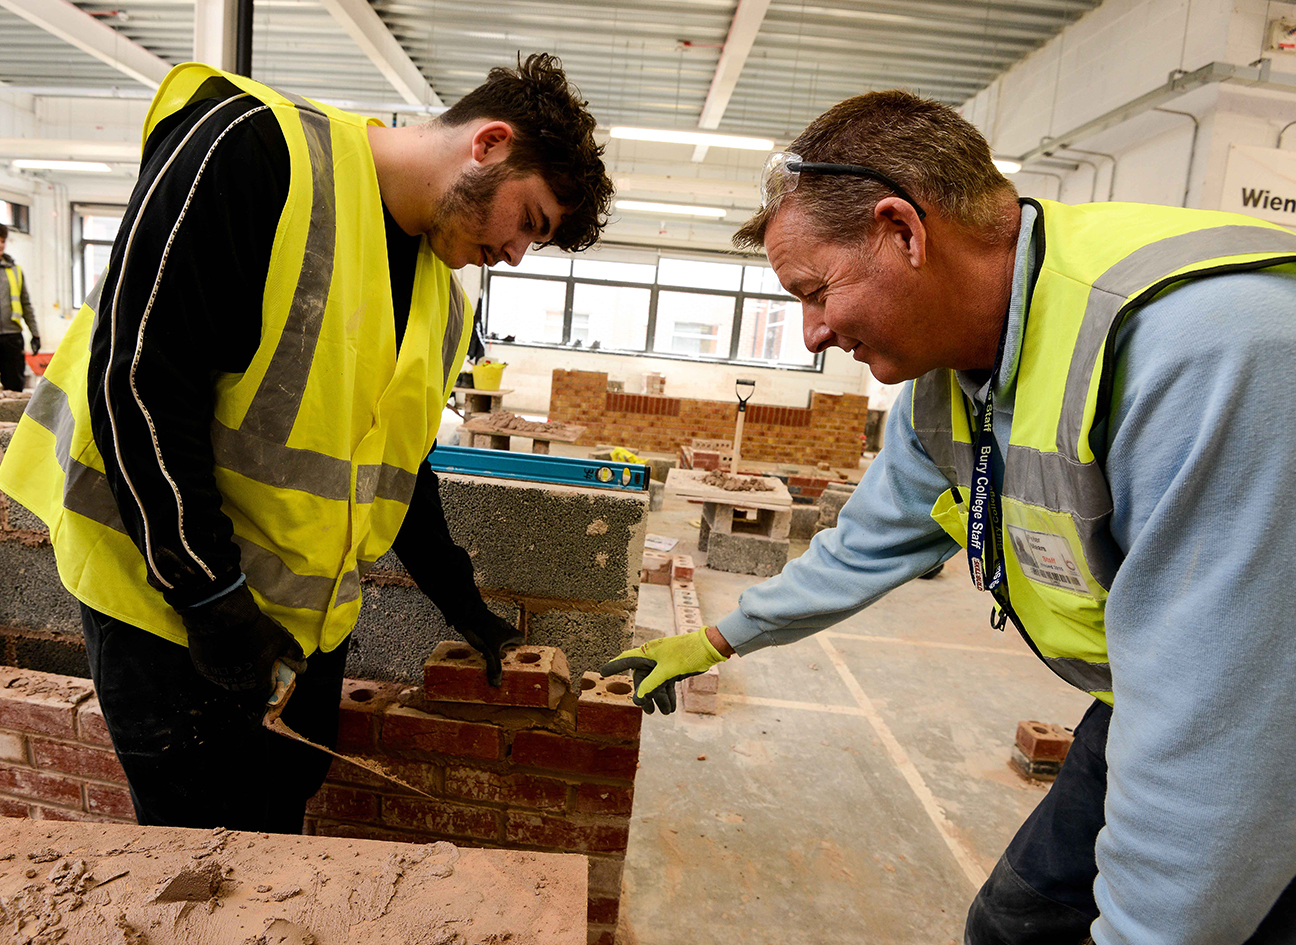 Bricklaying tutor and student laying bricks